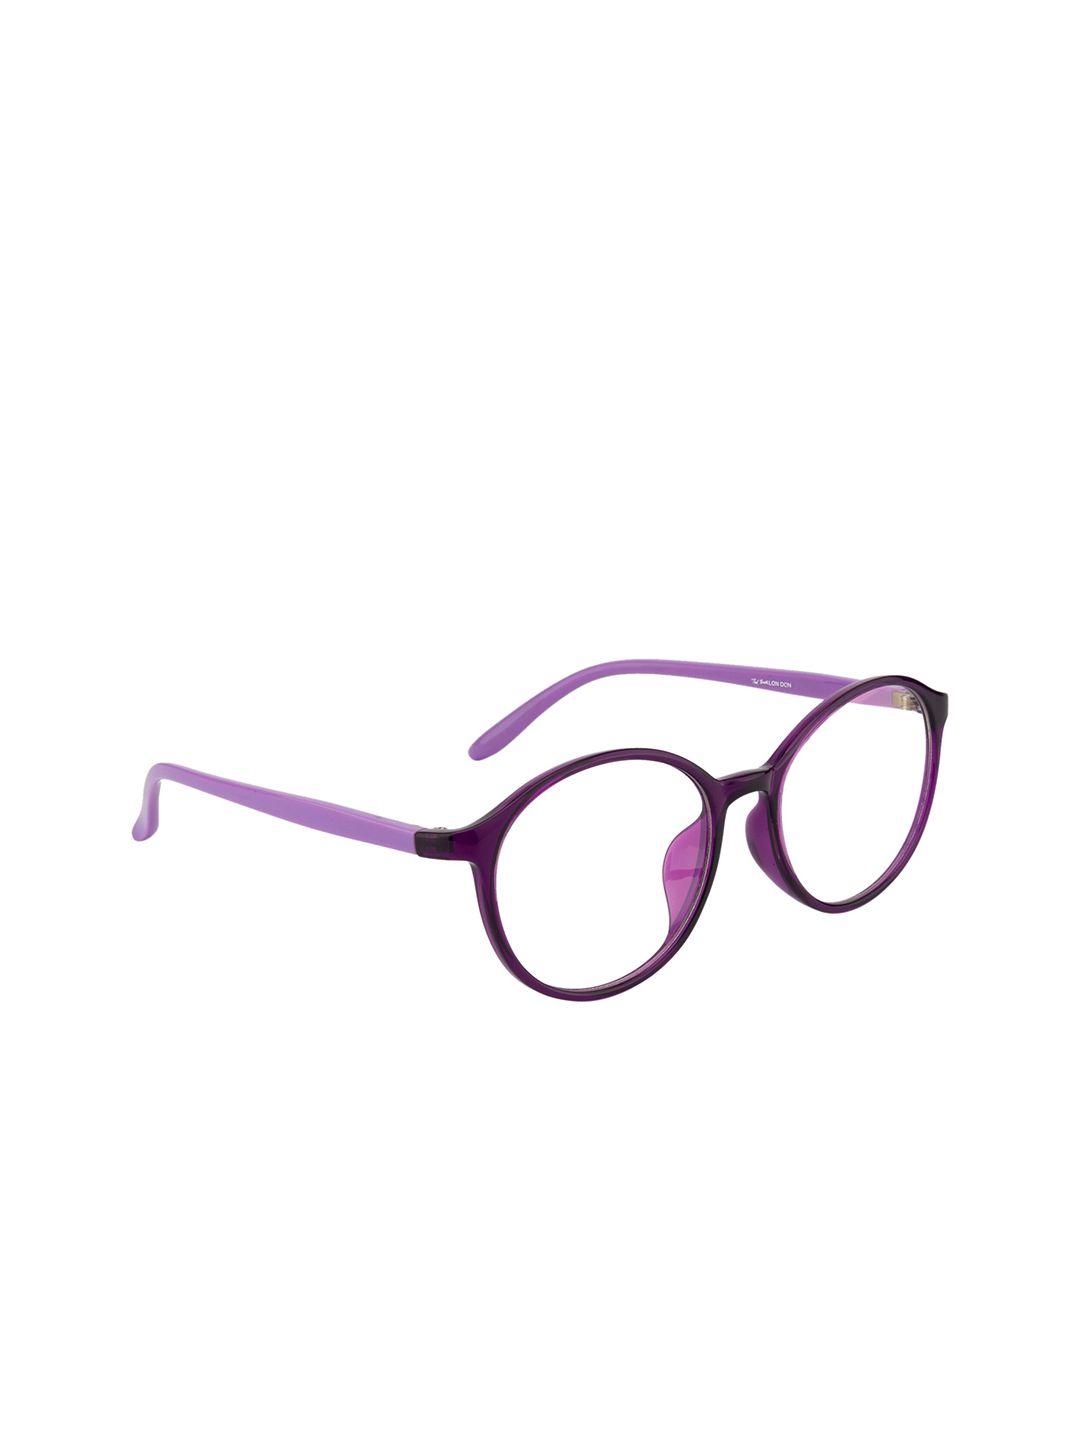 ted smith unisex purple full rim wayfarer frames eyeglasses